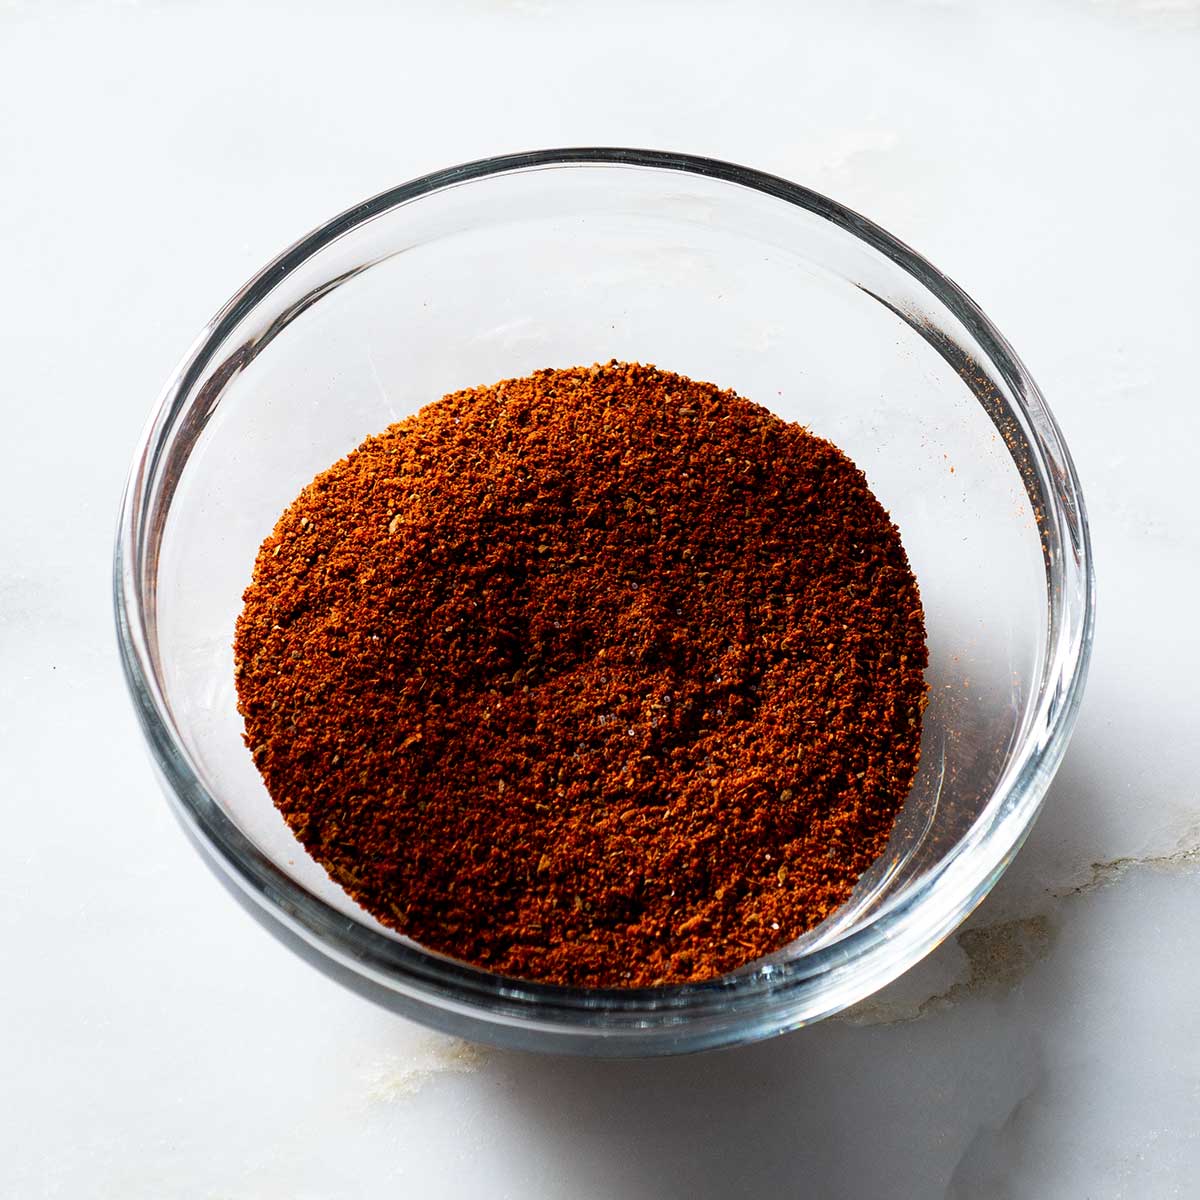 Cinnamon chili spice rub in a glass bowl.